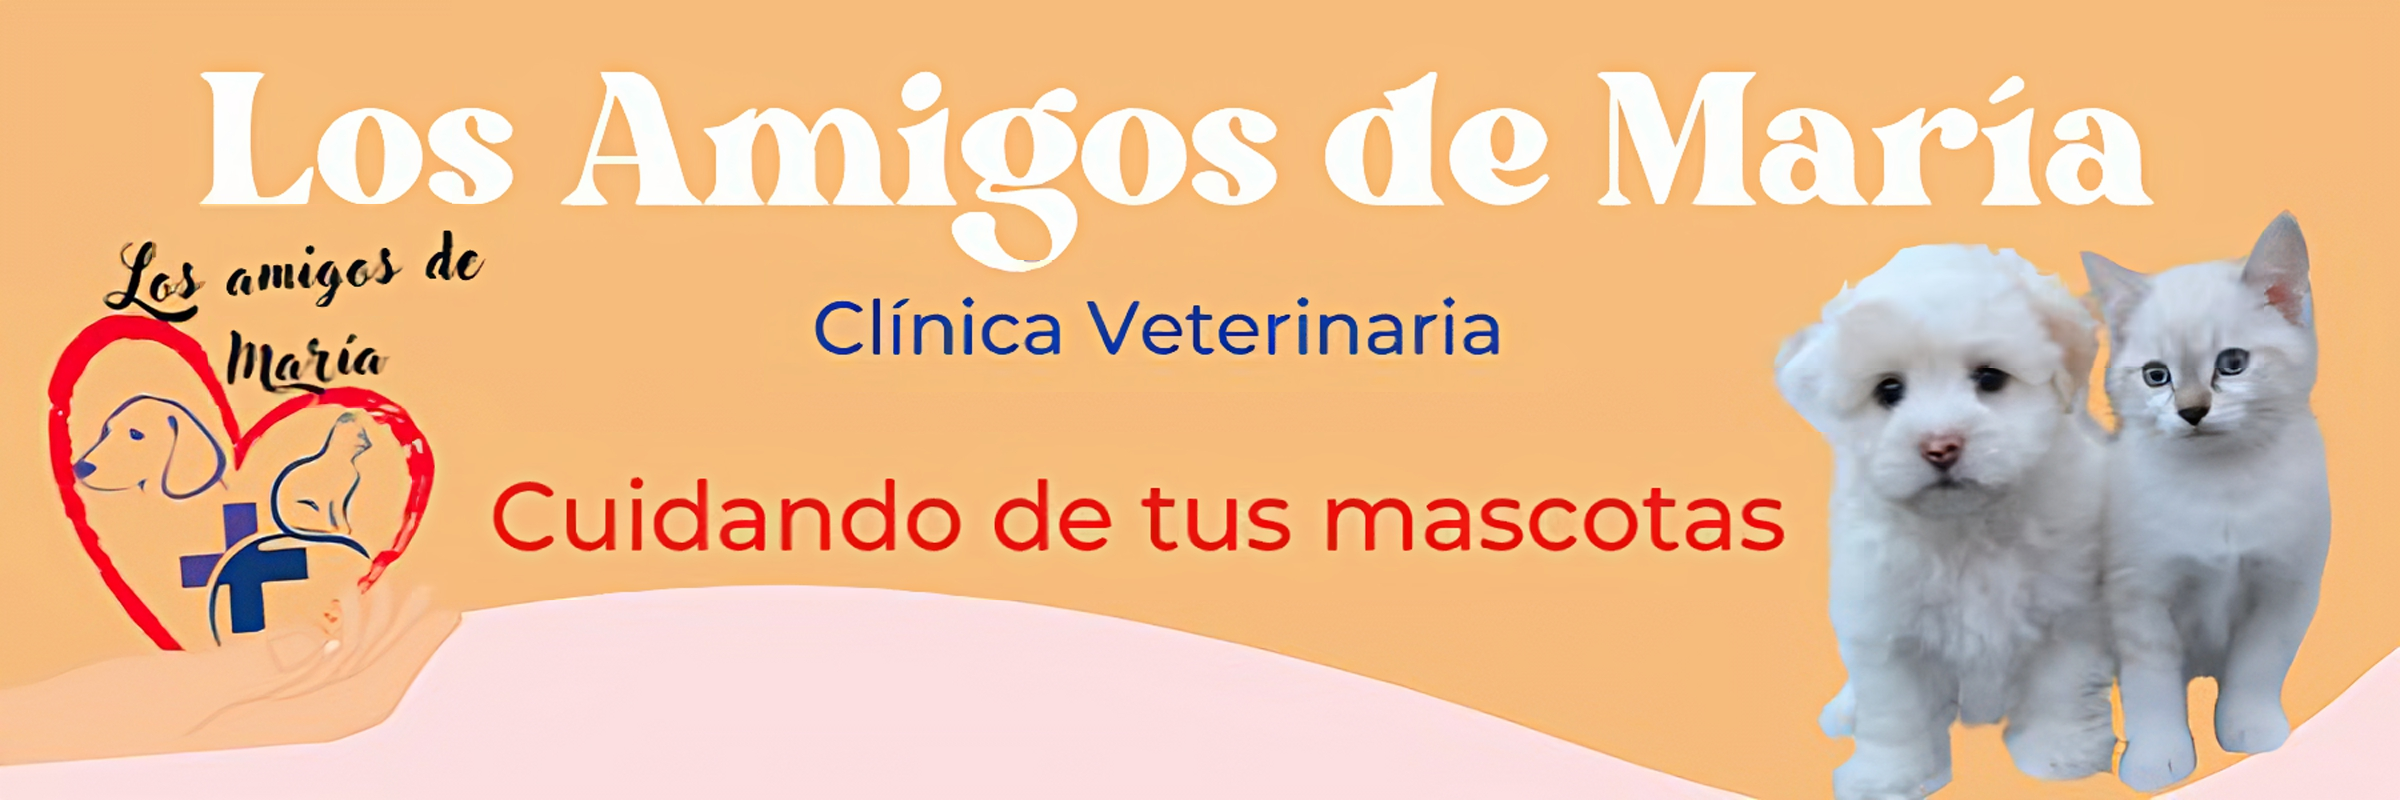 Clínica Veterinaria Los Amigos de María Bellavista Sevilla